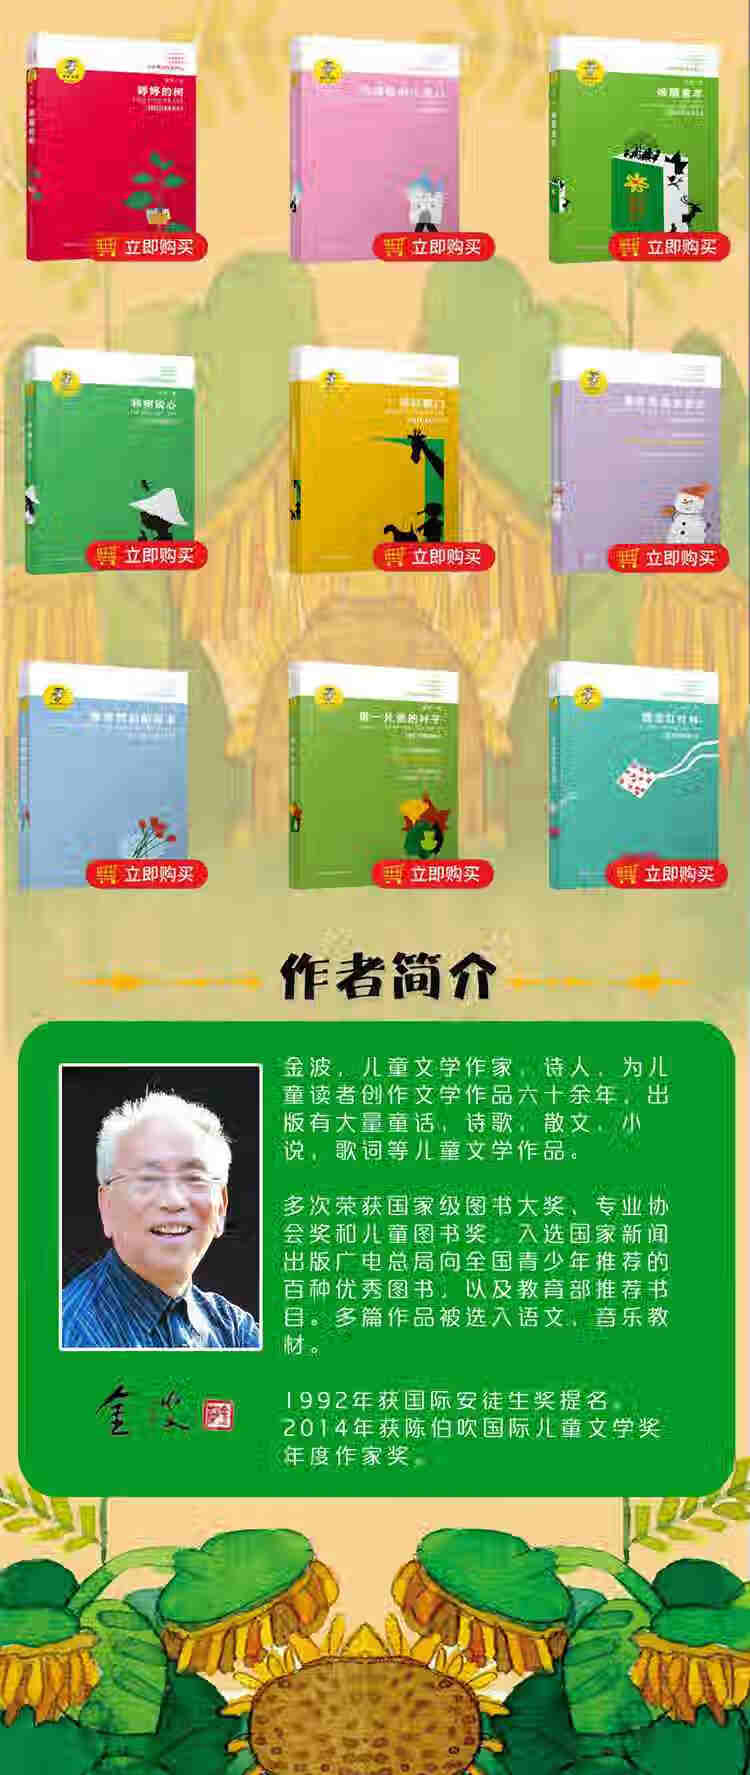 乌丢丢的奇遇(新版)作者简介  金波,1935年7月生于北京